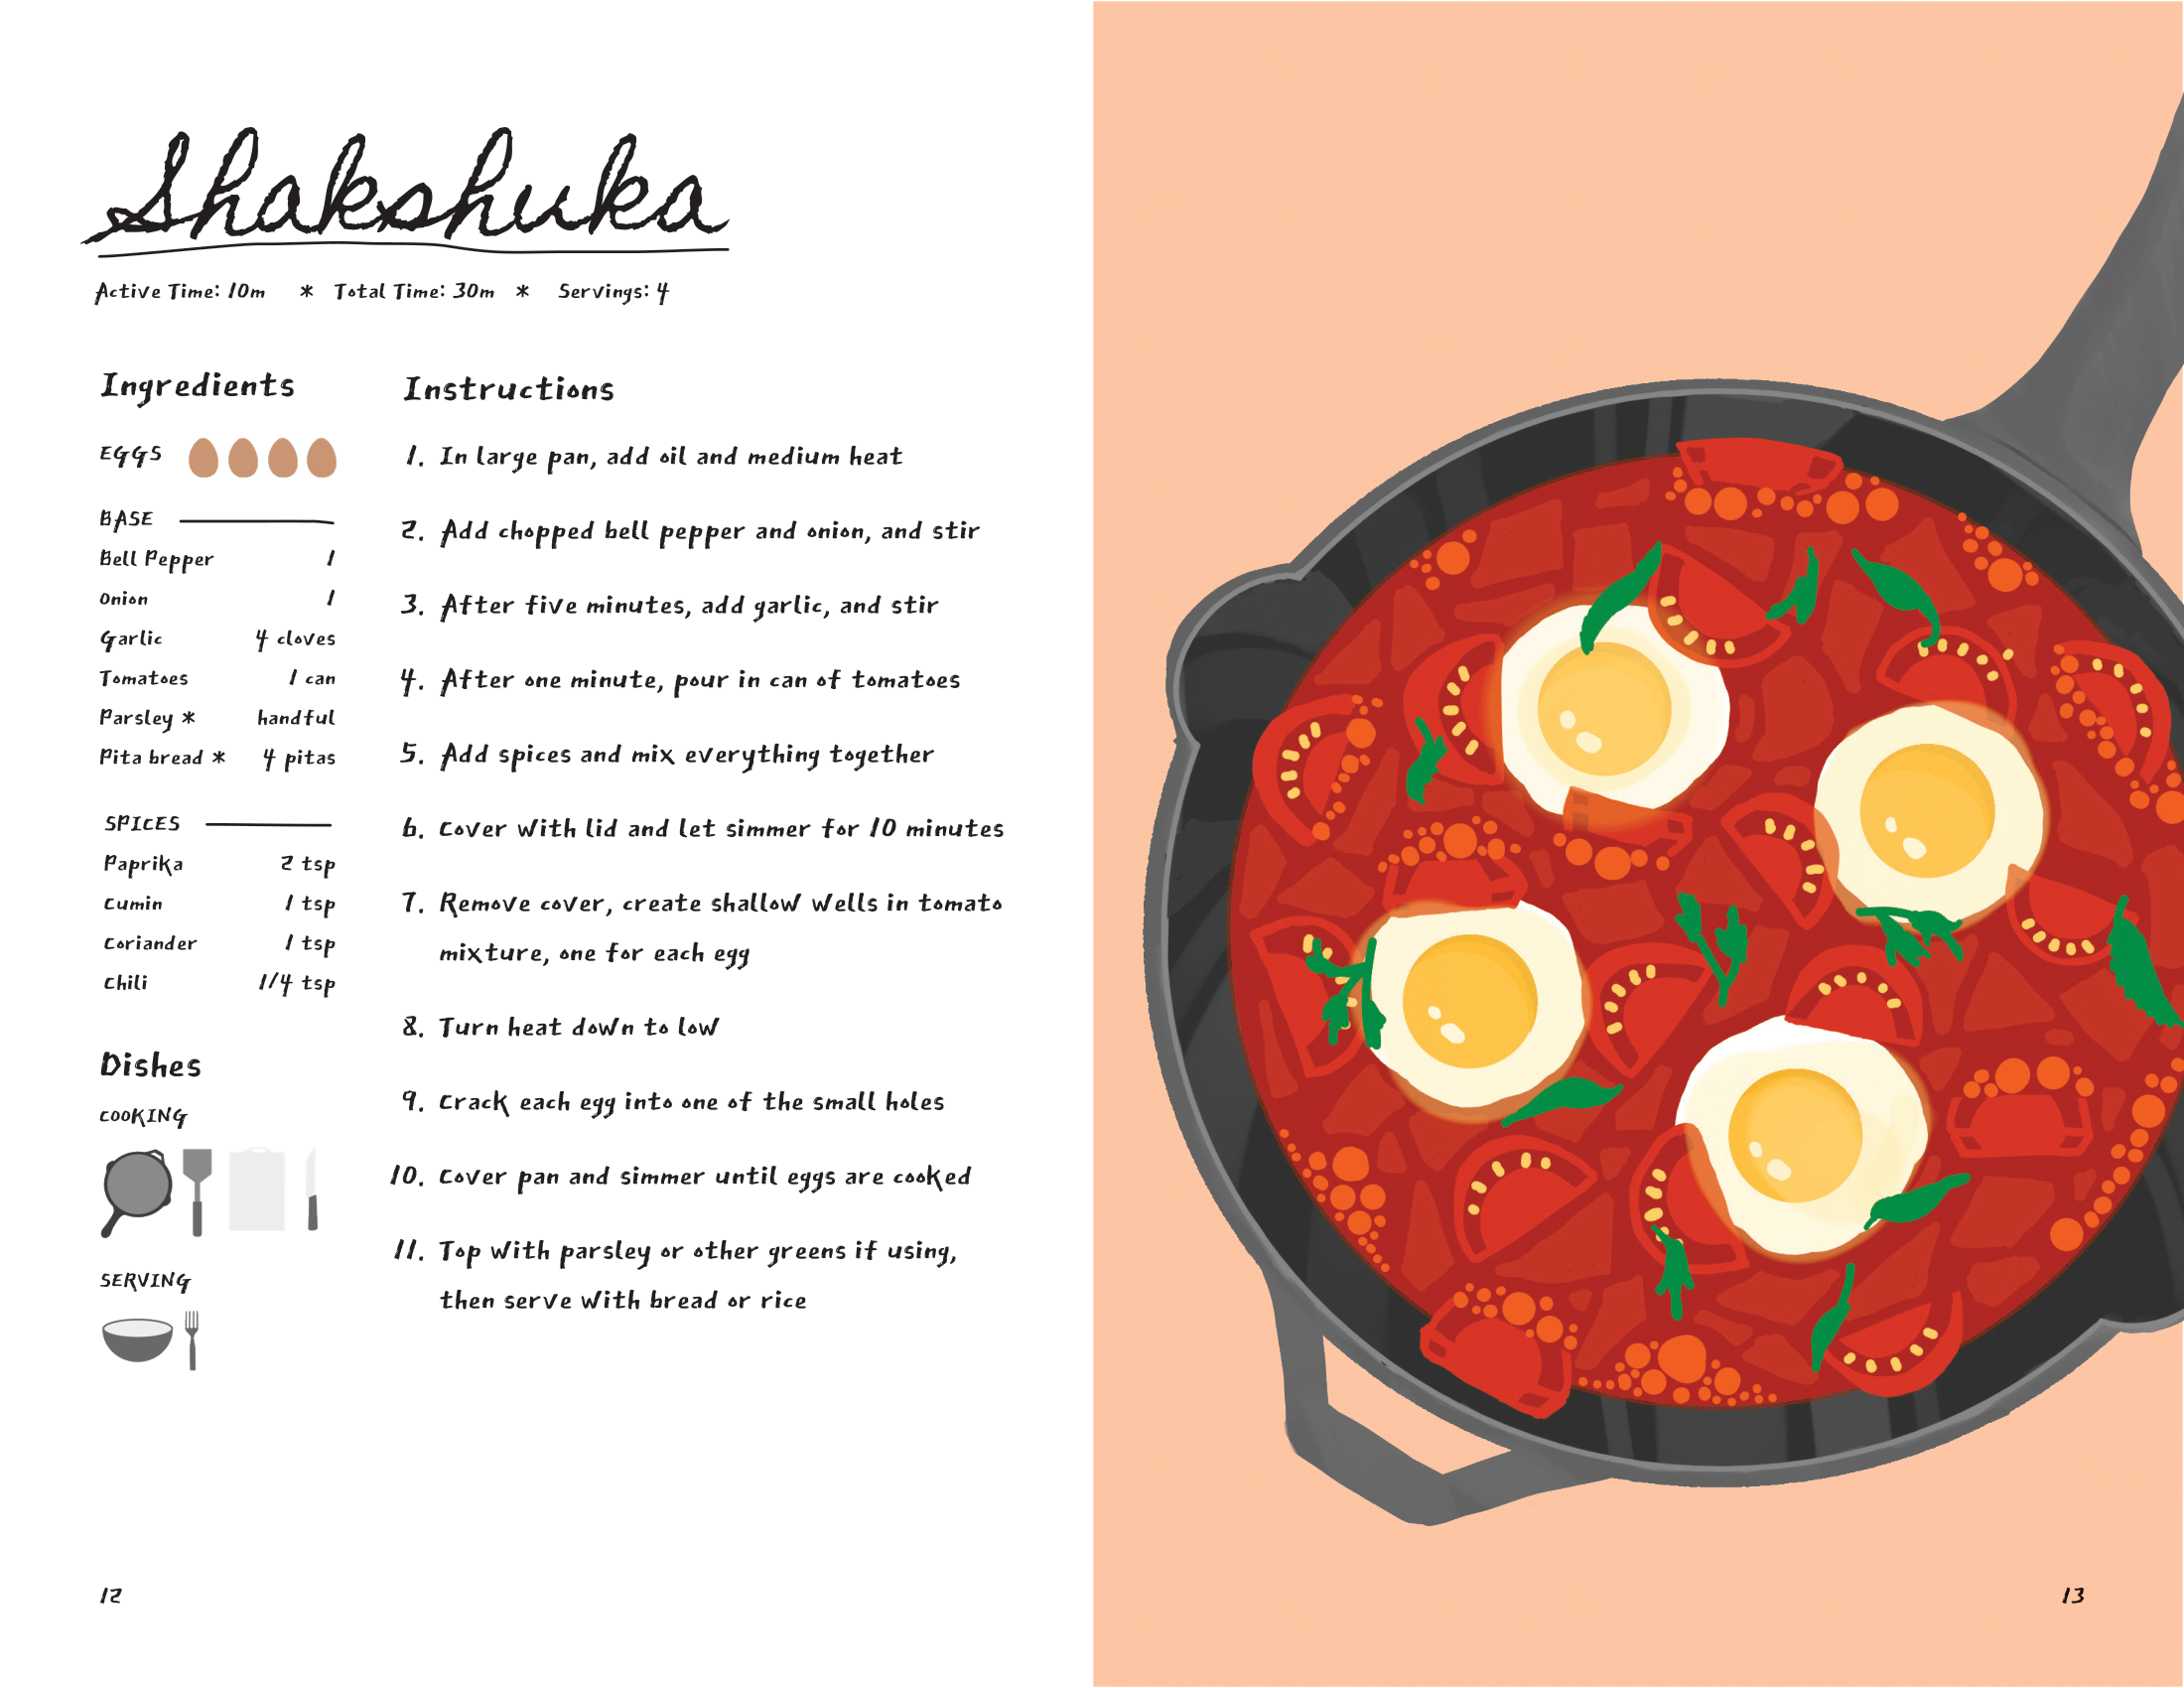 Recipe for Shakshuka